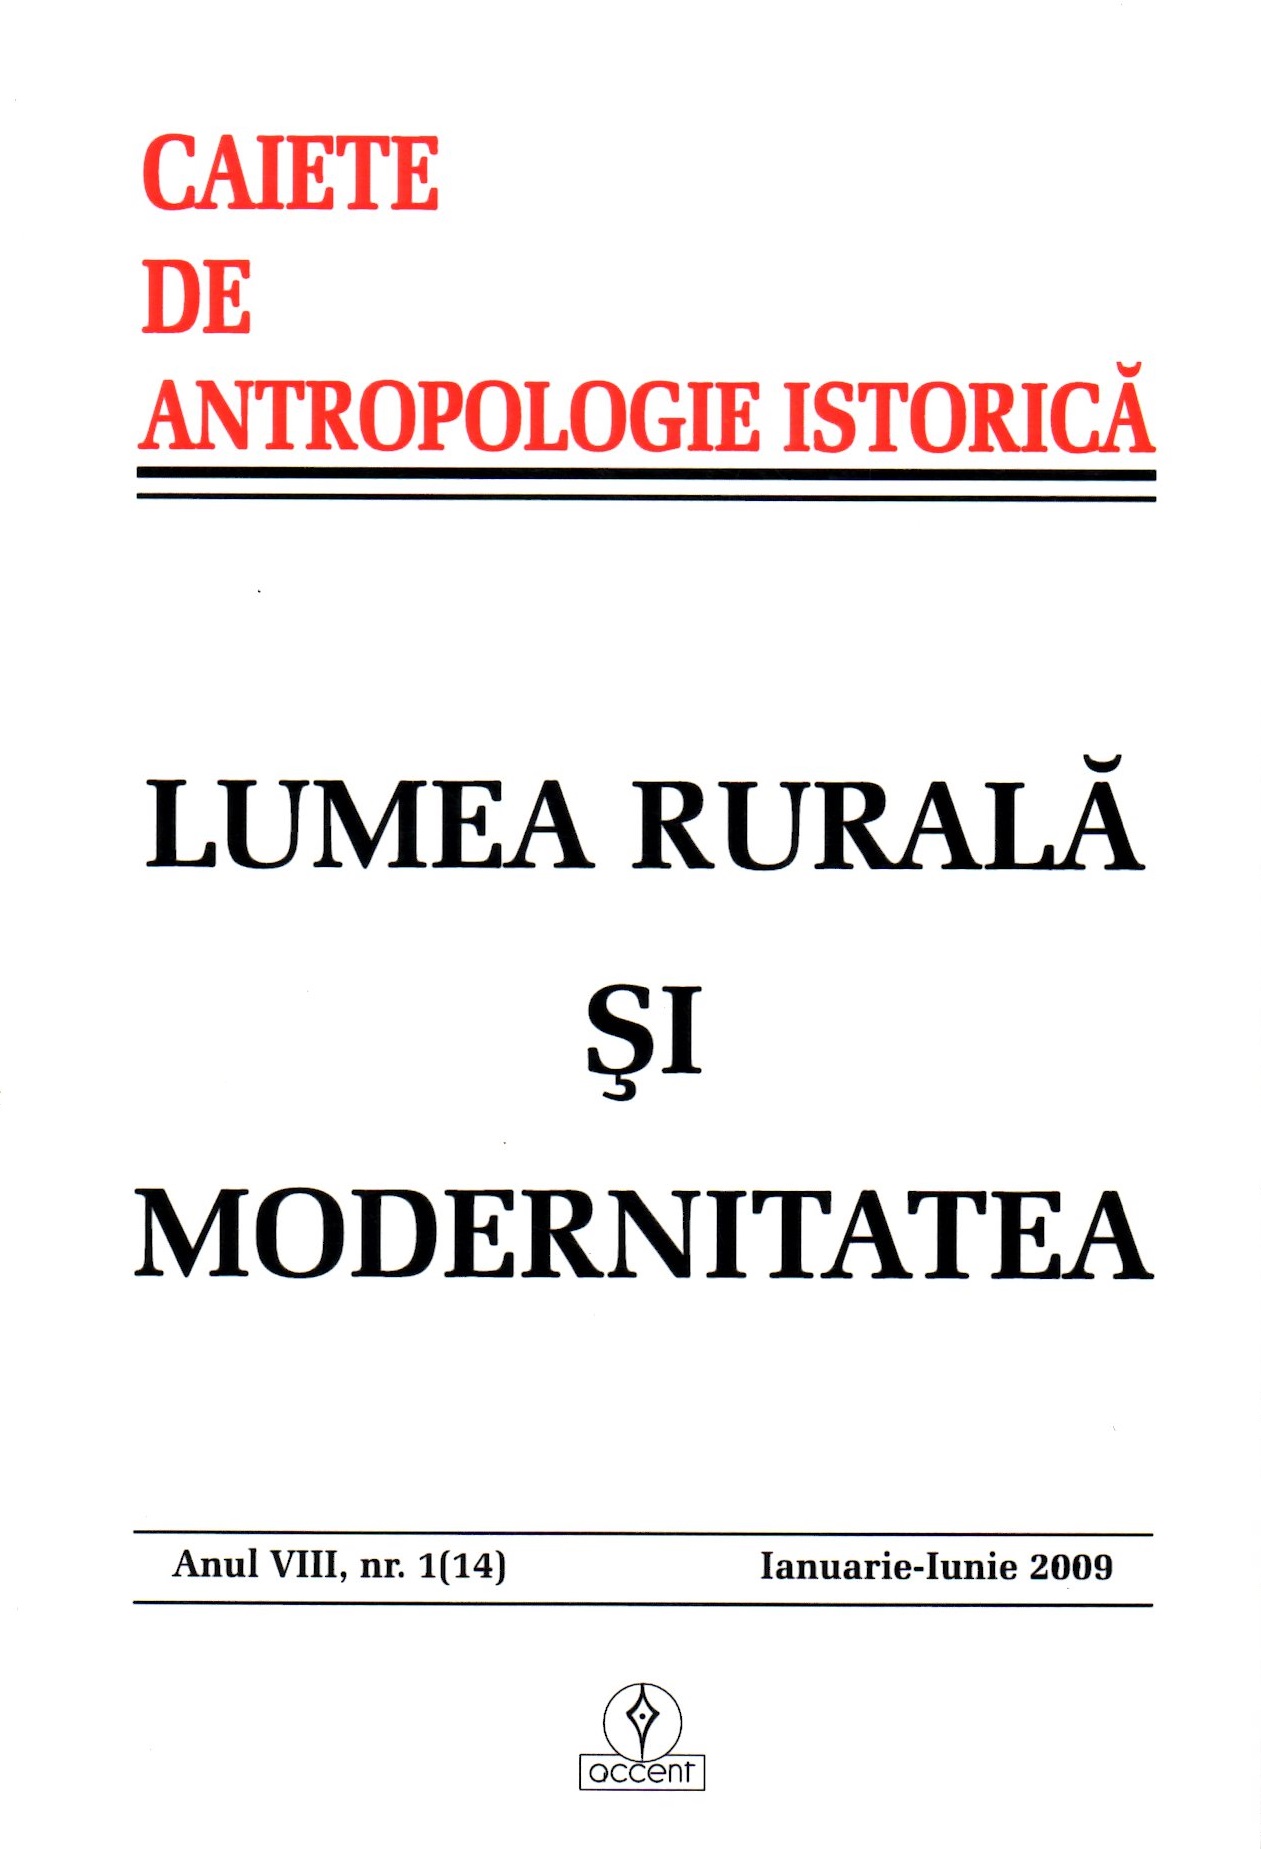 Dominique Lestel, The Animal Origins of Culture, Traducere din limba franceză de Costin Popescu, Editura Trei, București, 2004 Cover Image